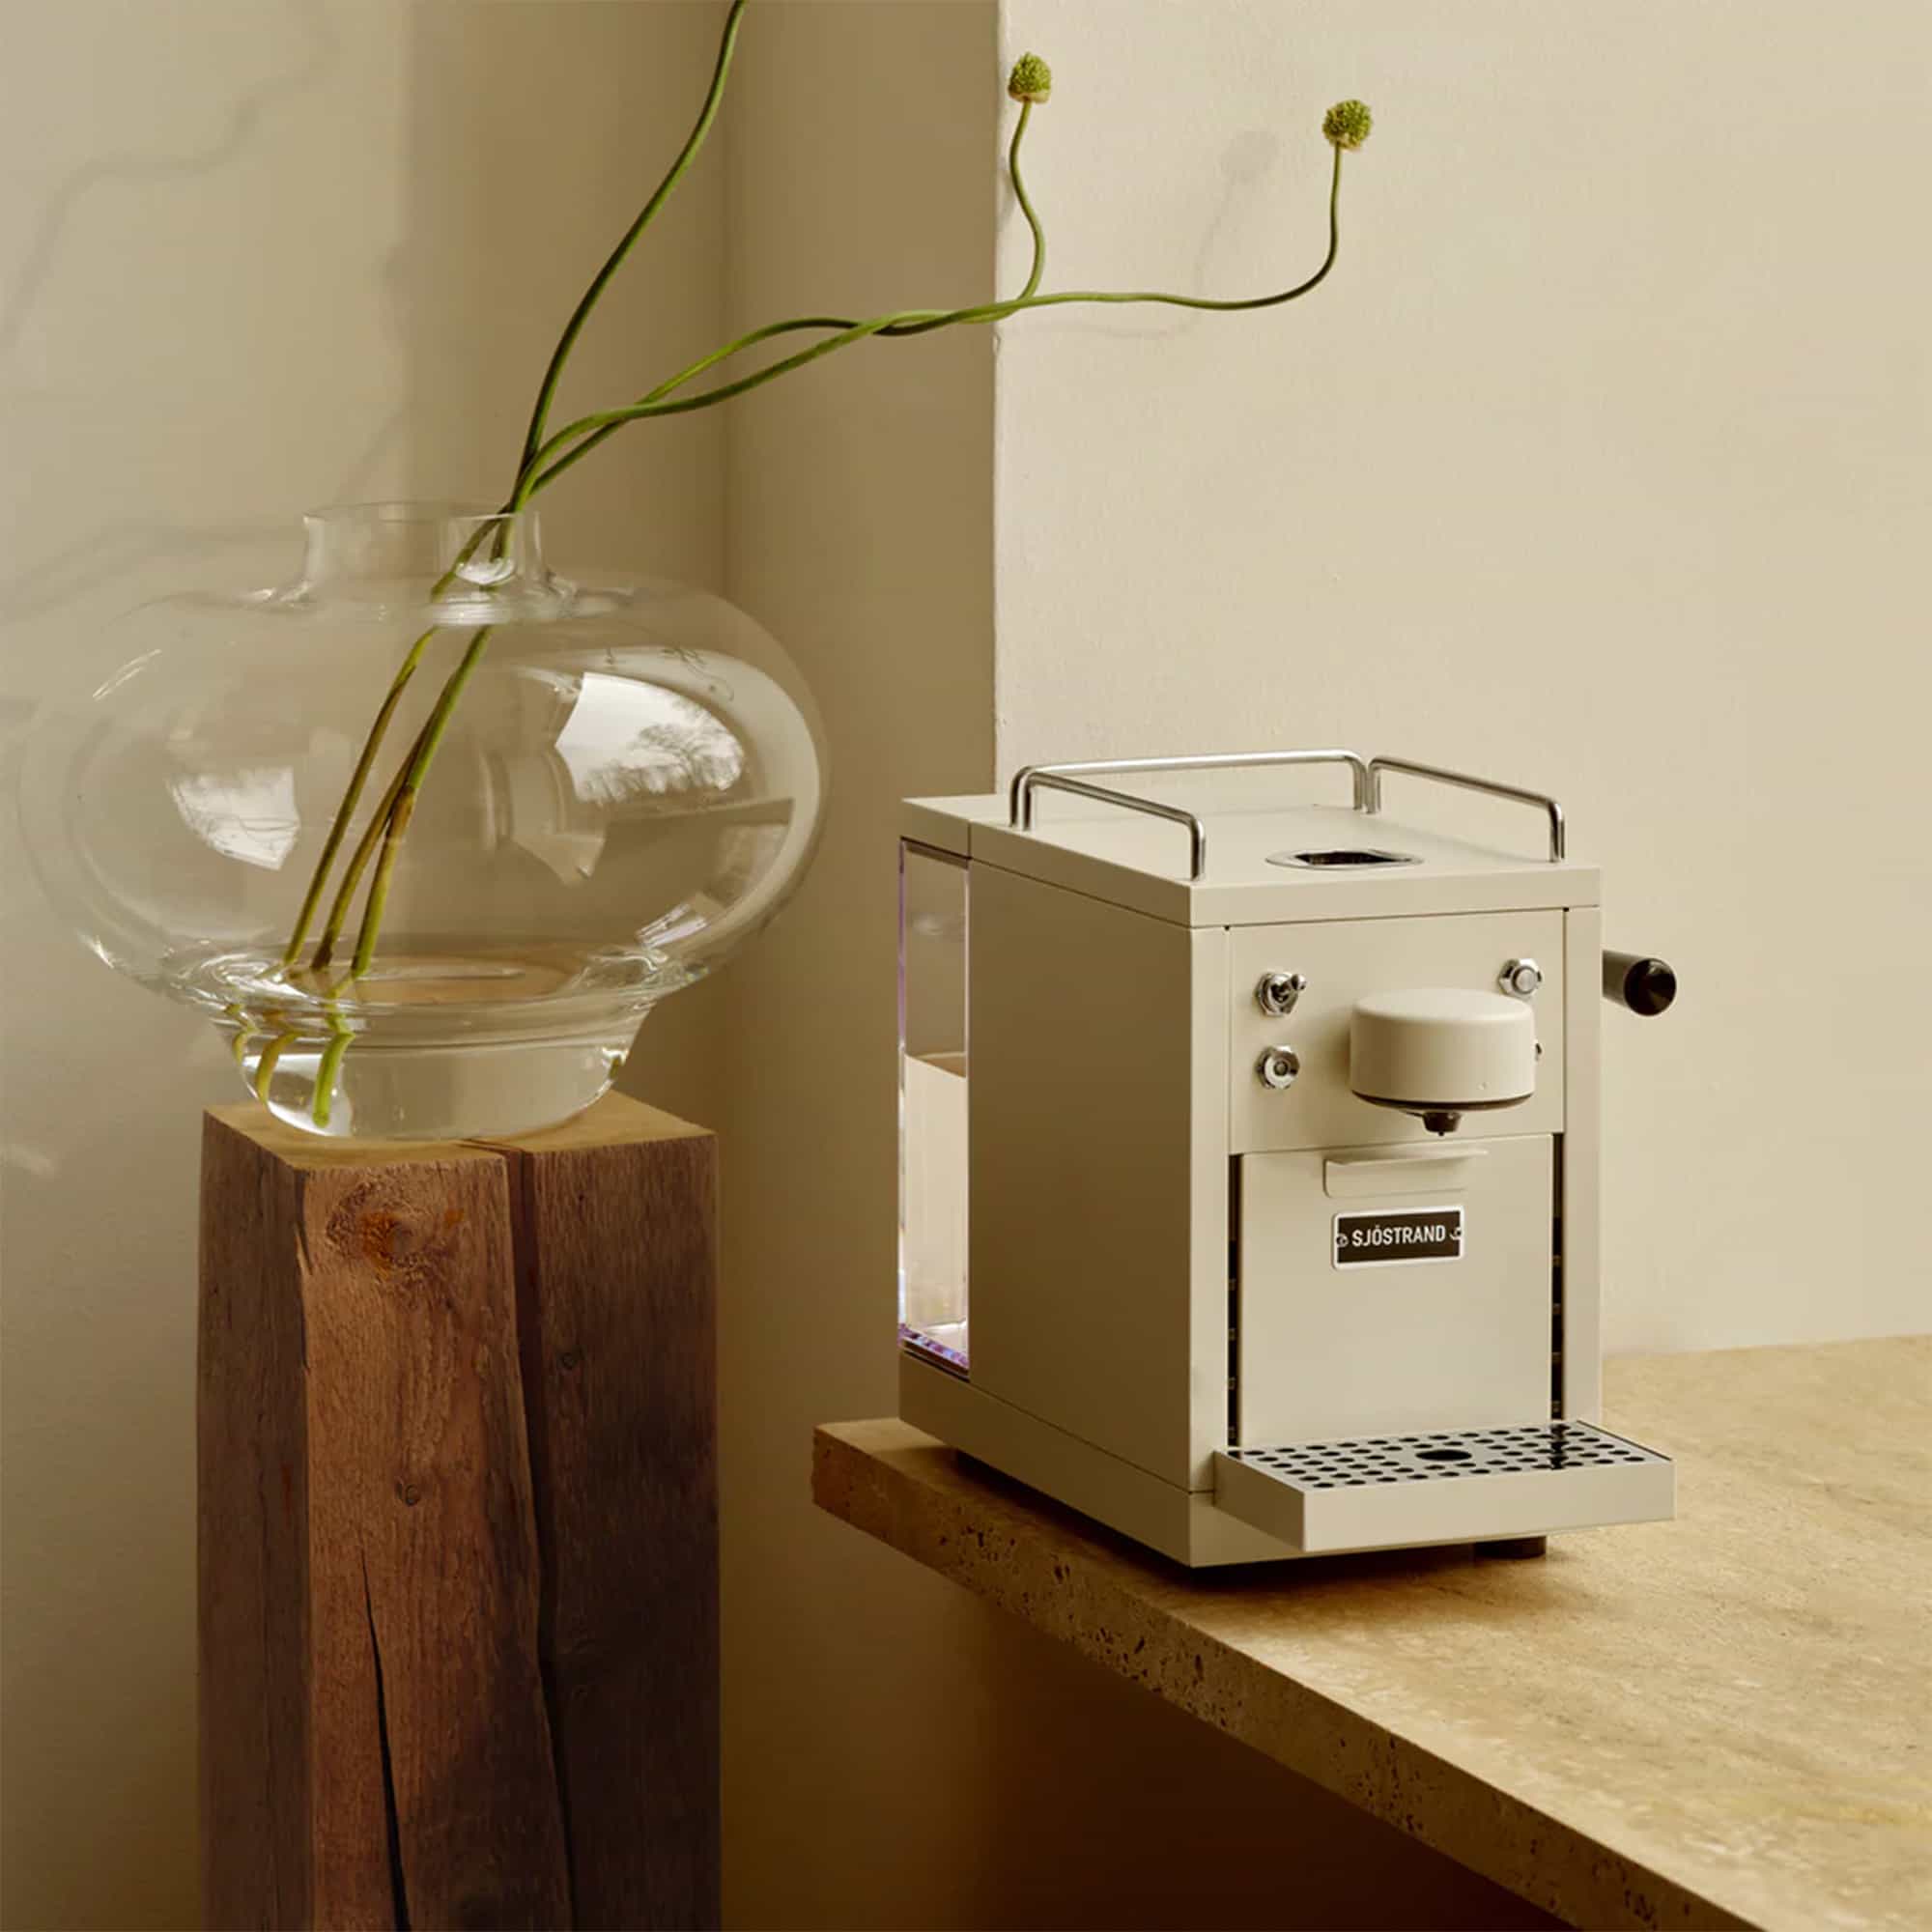 The Original - Espresso Capsule Machine, Beige